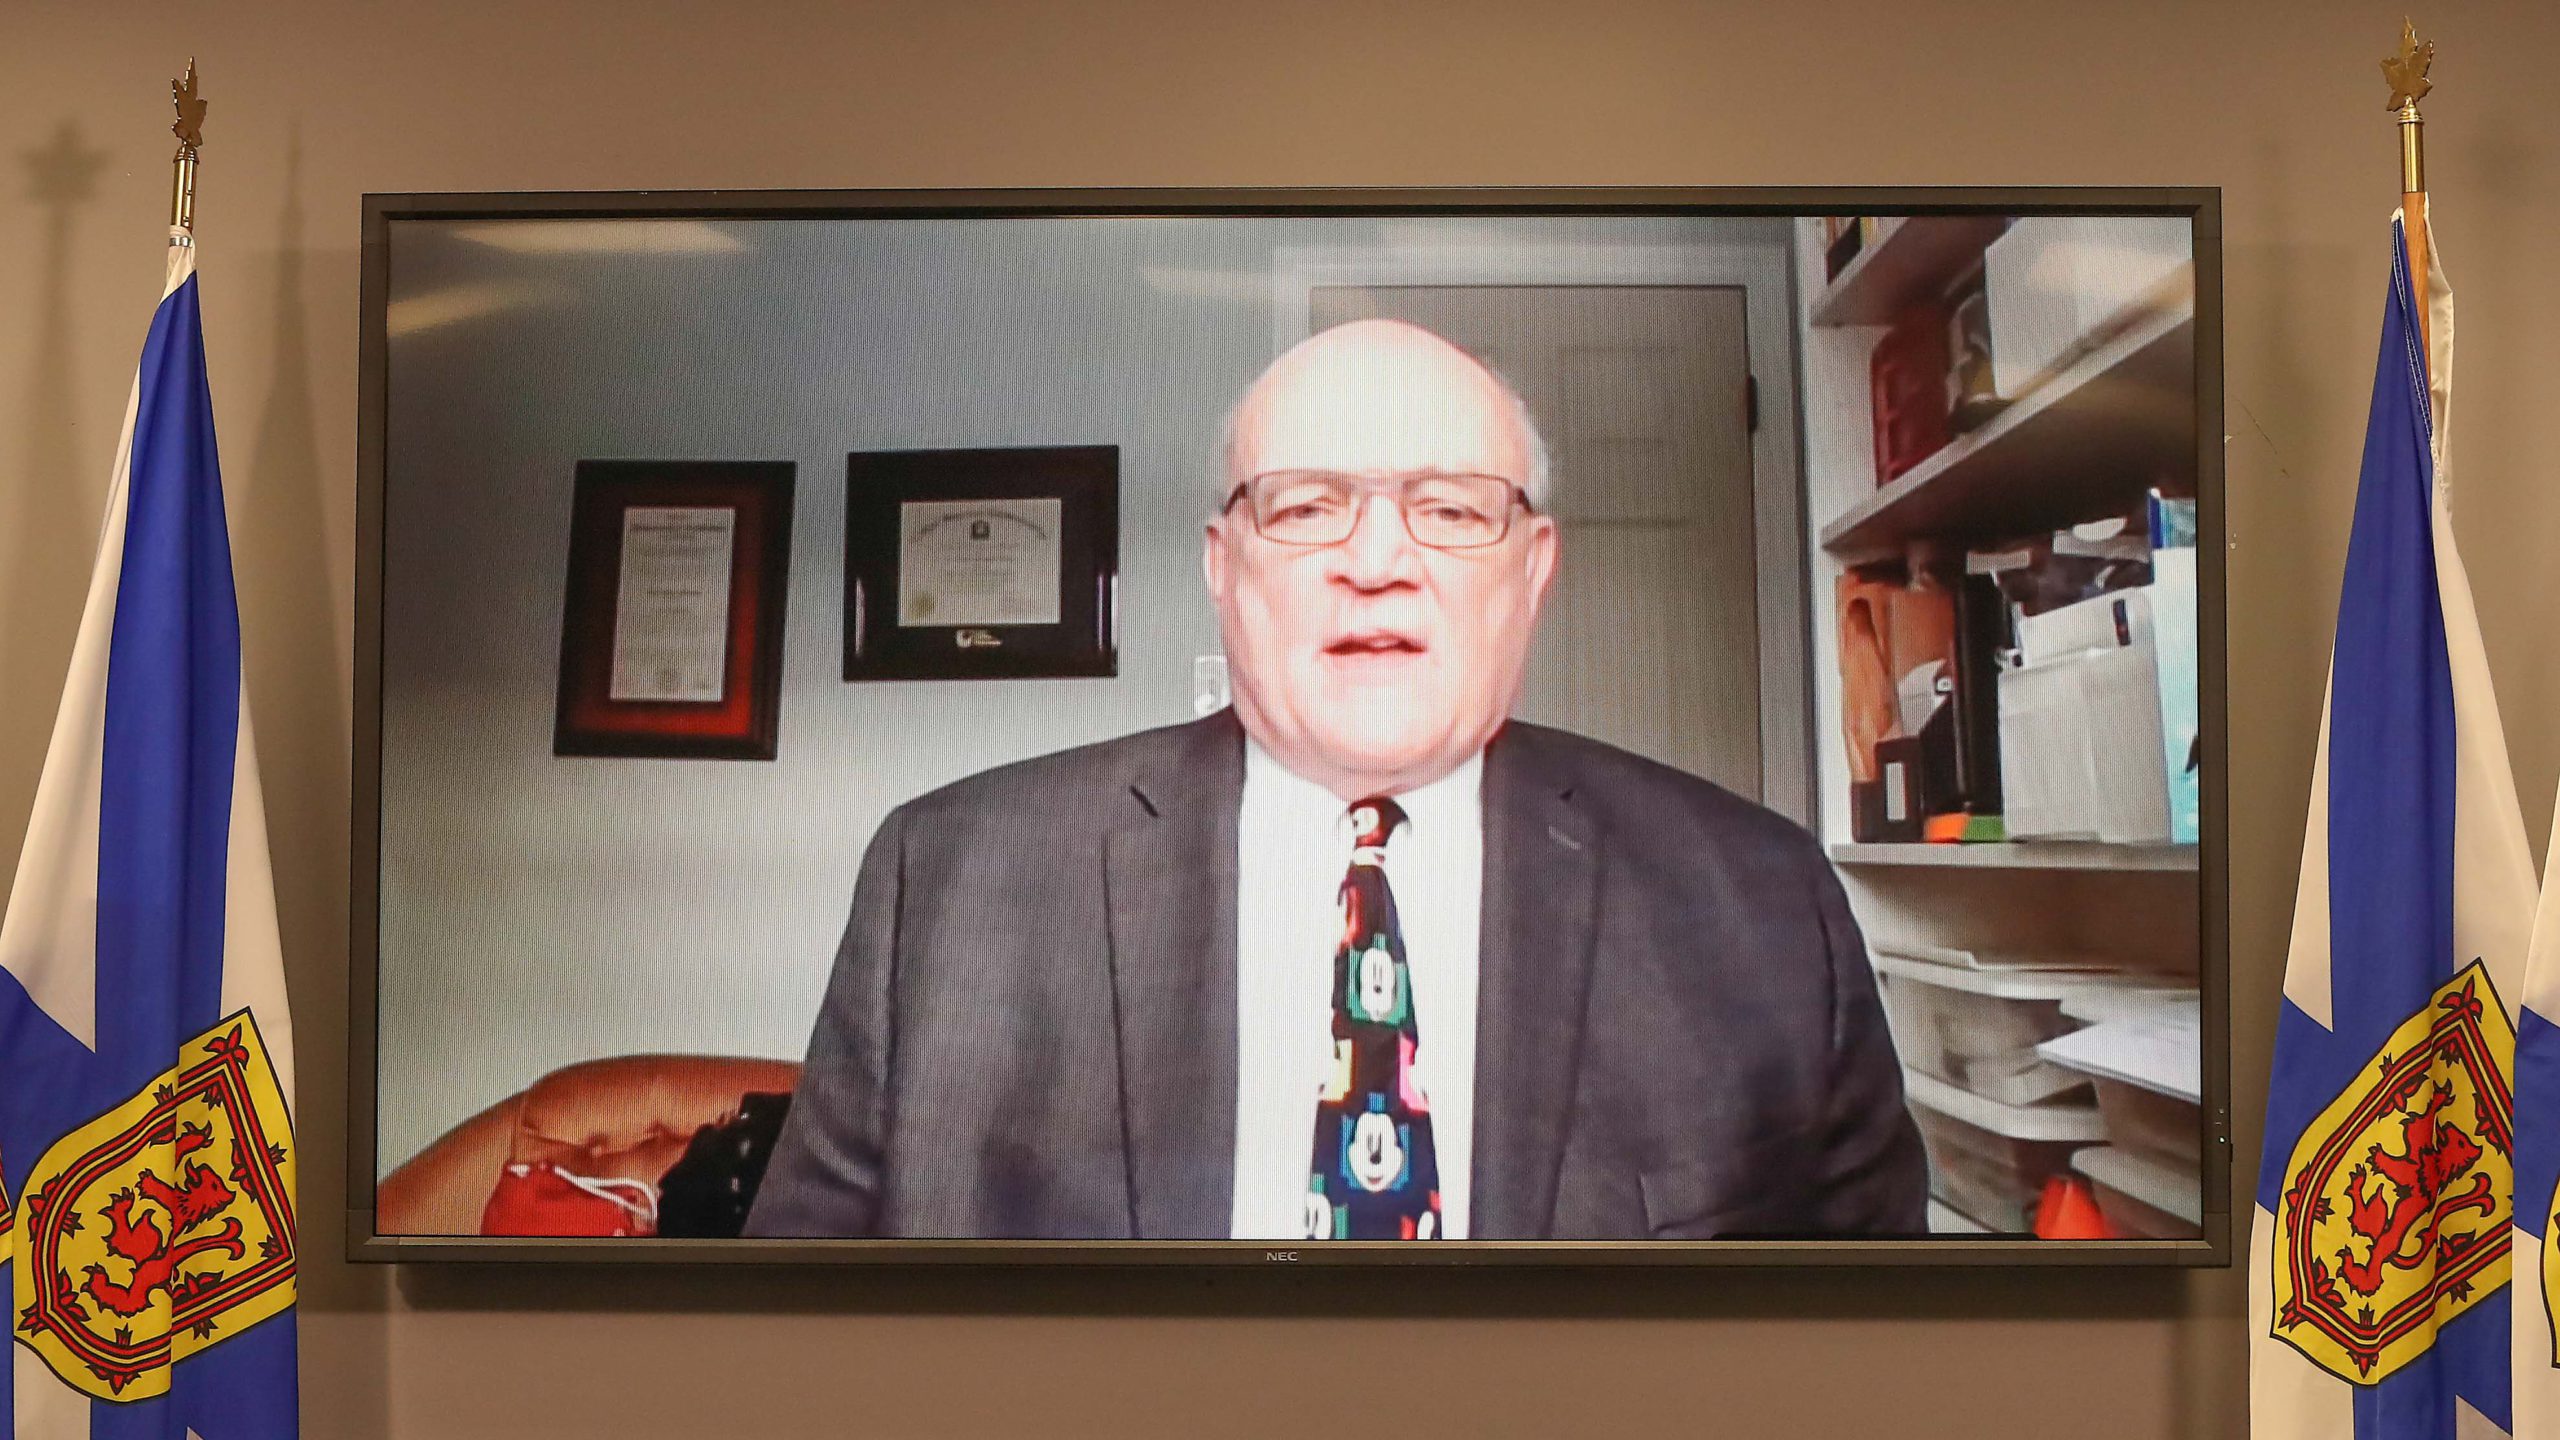 Dr. Robert Strang is seen on a TV screen between Nova Scotian flags.